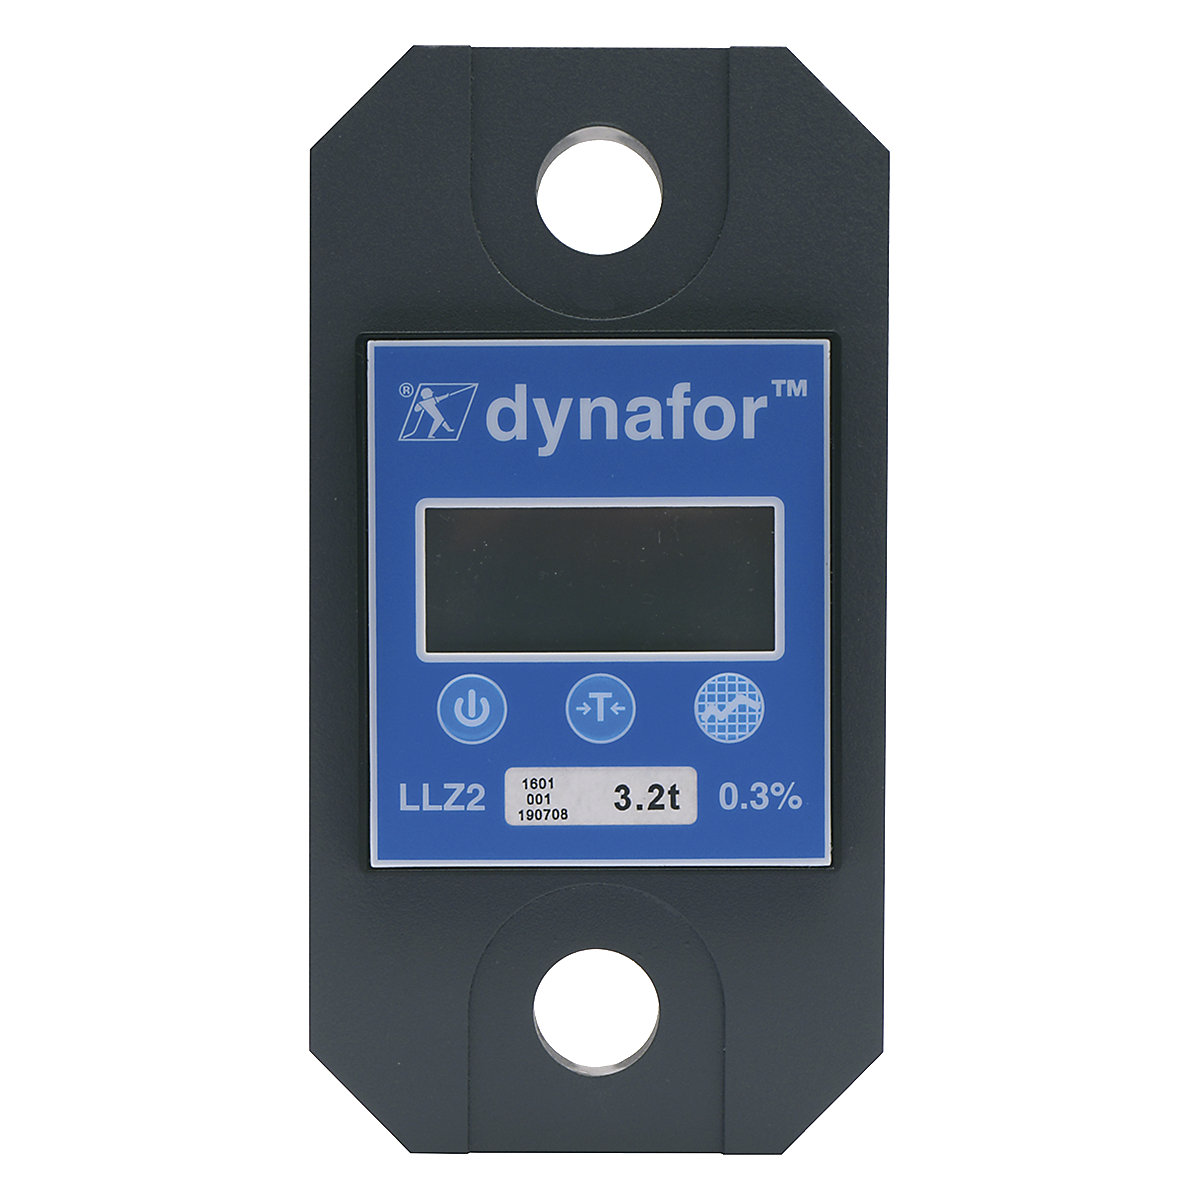 Uređaj za mjerenje sile dynafor™ LLZ2, industrijska izvedba, područje vaganja do 3,2 t